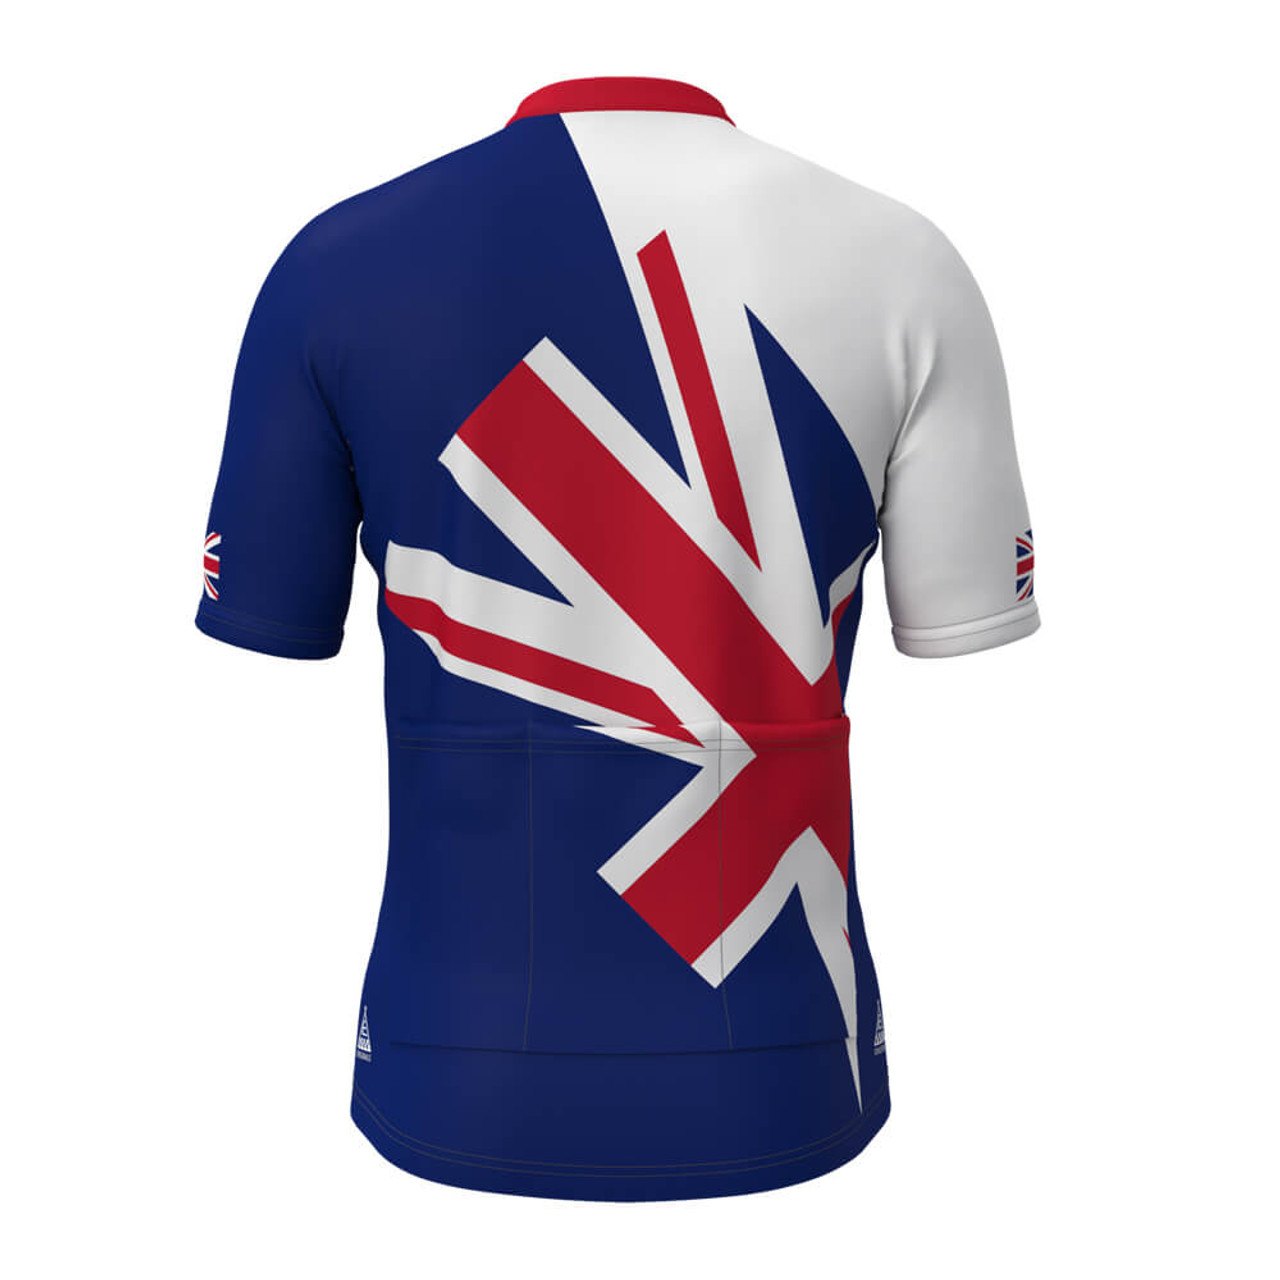 union jack cycling jersey